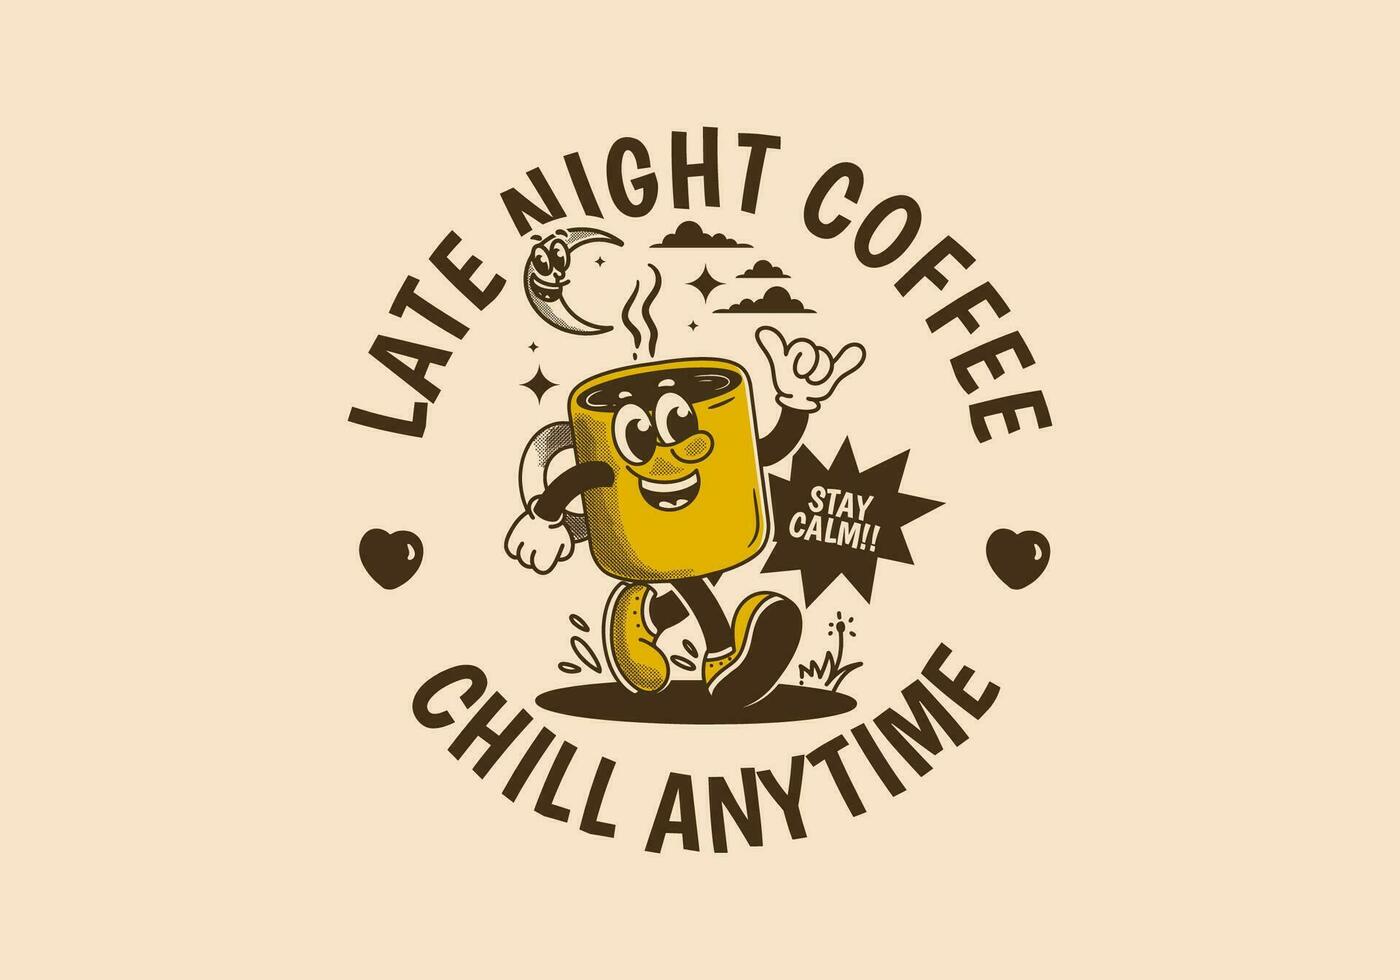 kyla när som helst, sent natt kaffe. maskot karaktär illustration av gående kaffe råna vektor